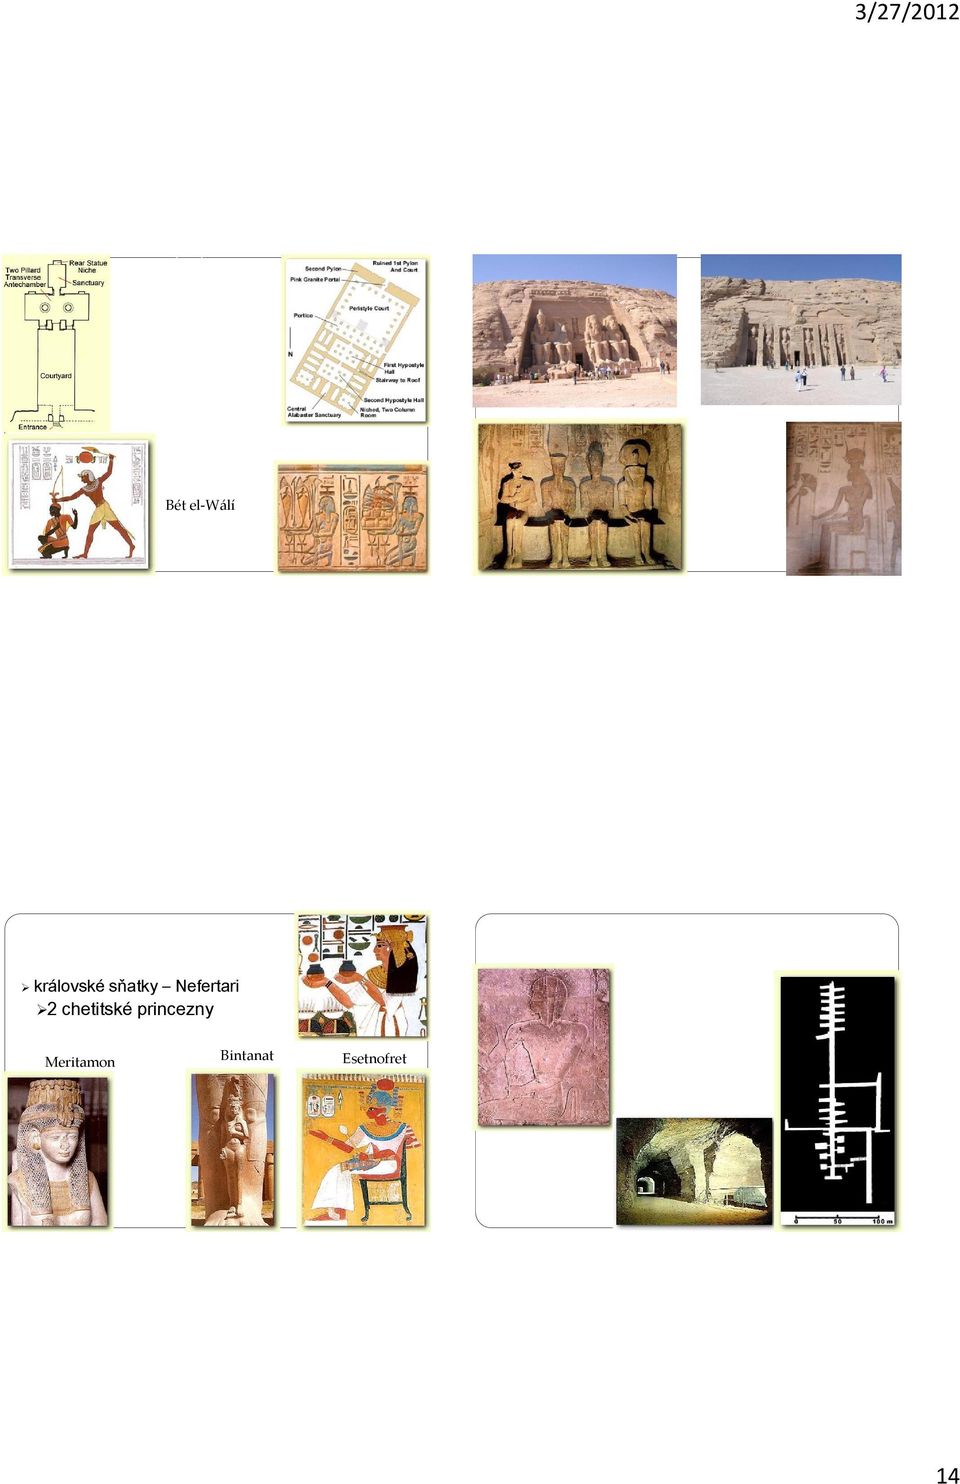 sňatky Nefertari 2 chetitské princezny